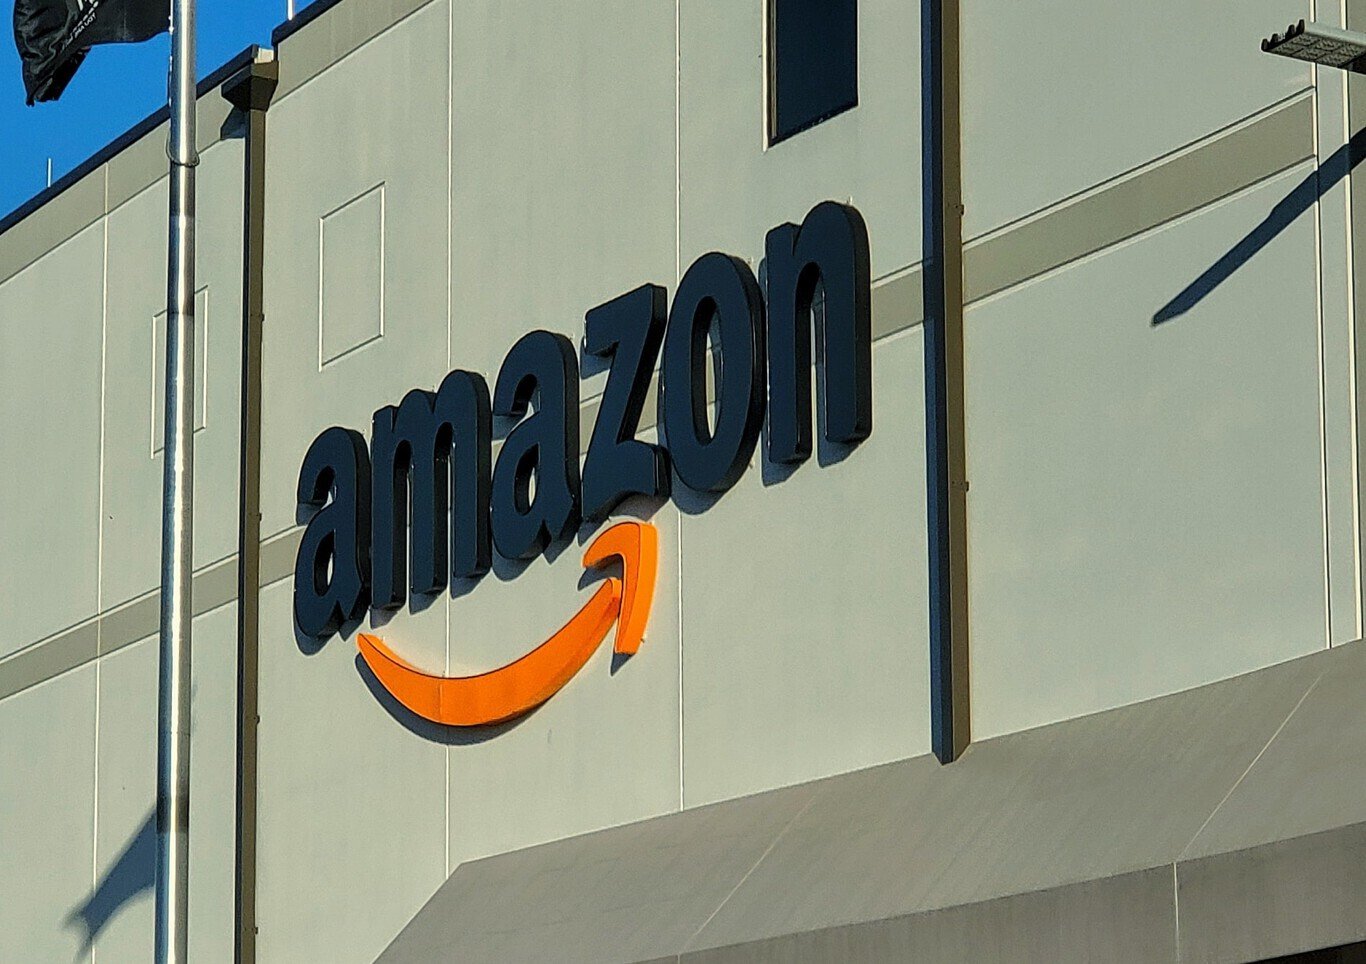 Black Friday: Los 5 productos de Amazon preferidos de los lectores del Nacional